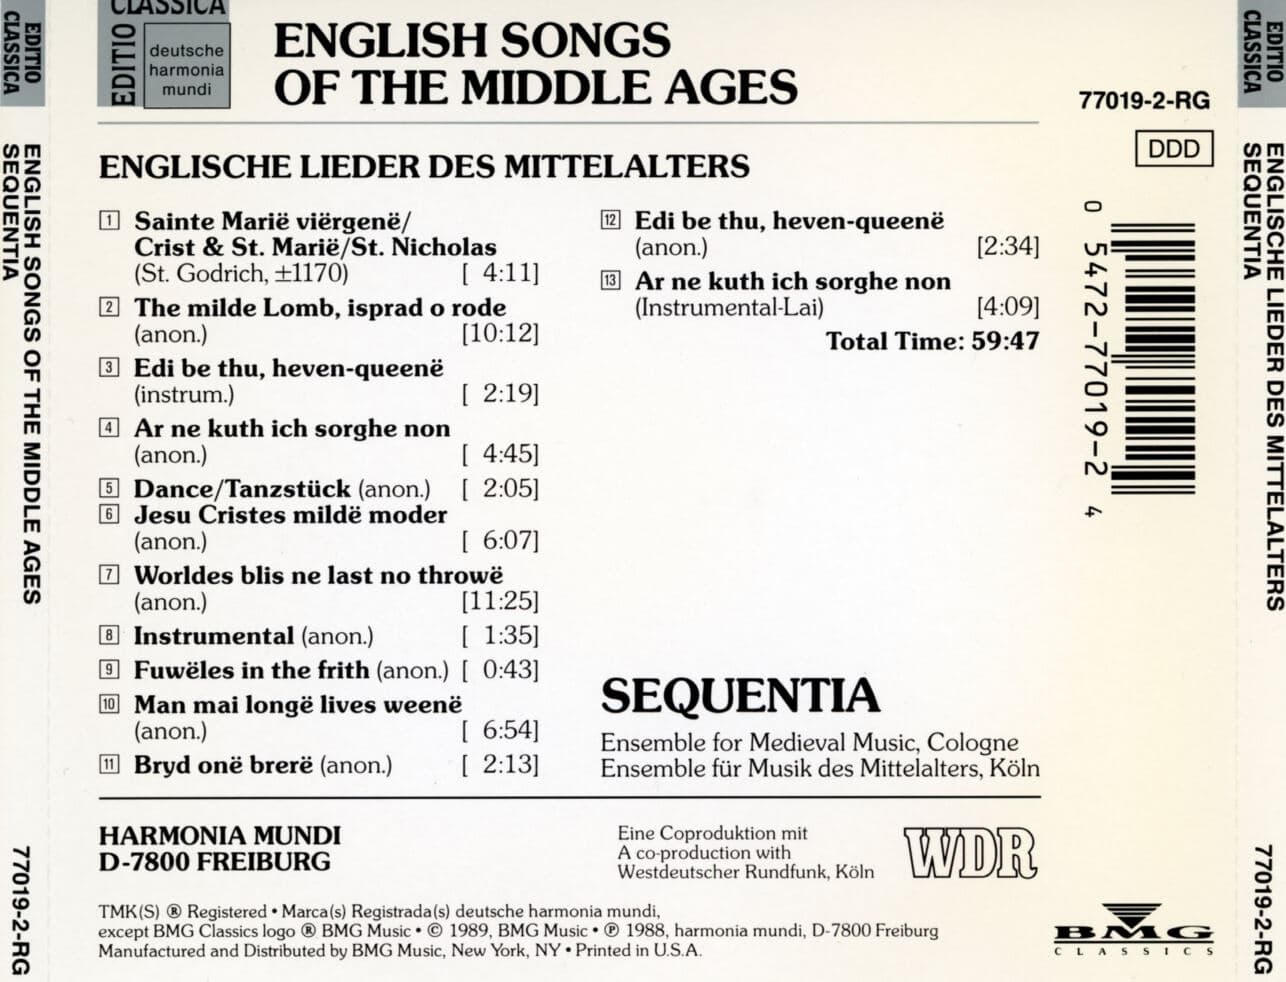 세쿠엔티아 - Sequentia - English Songs Of The Middle Ages (중세 영국 민요집) [U.S발매]